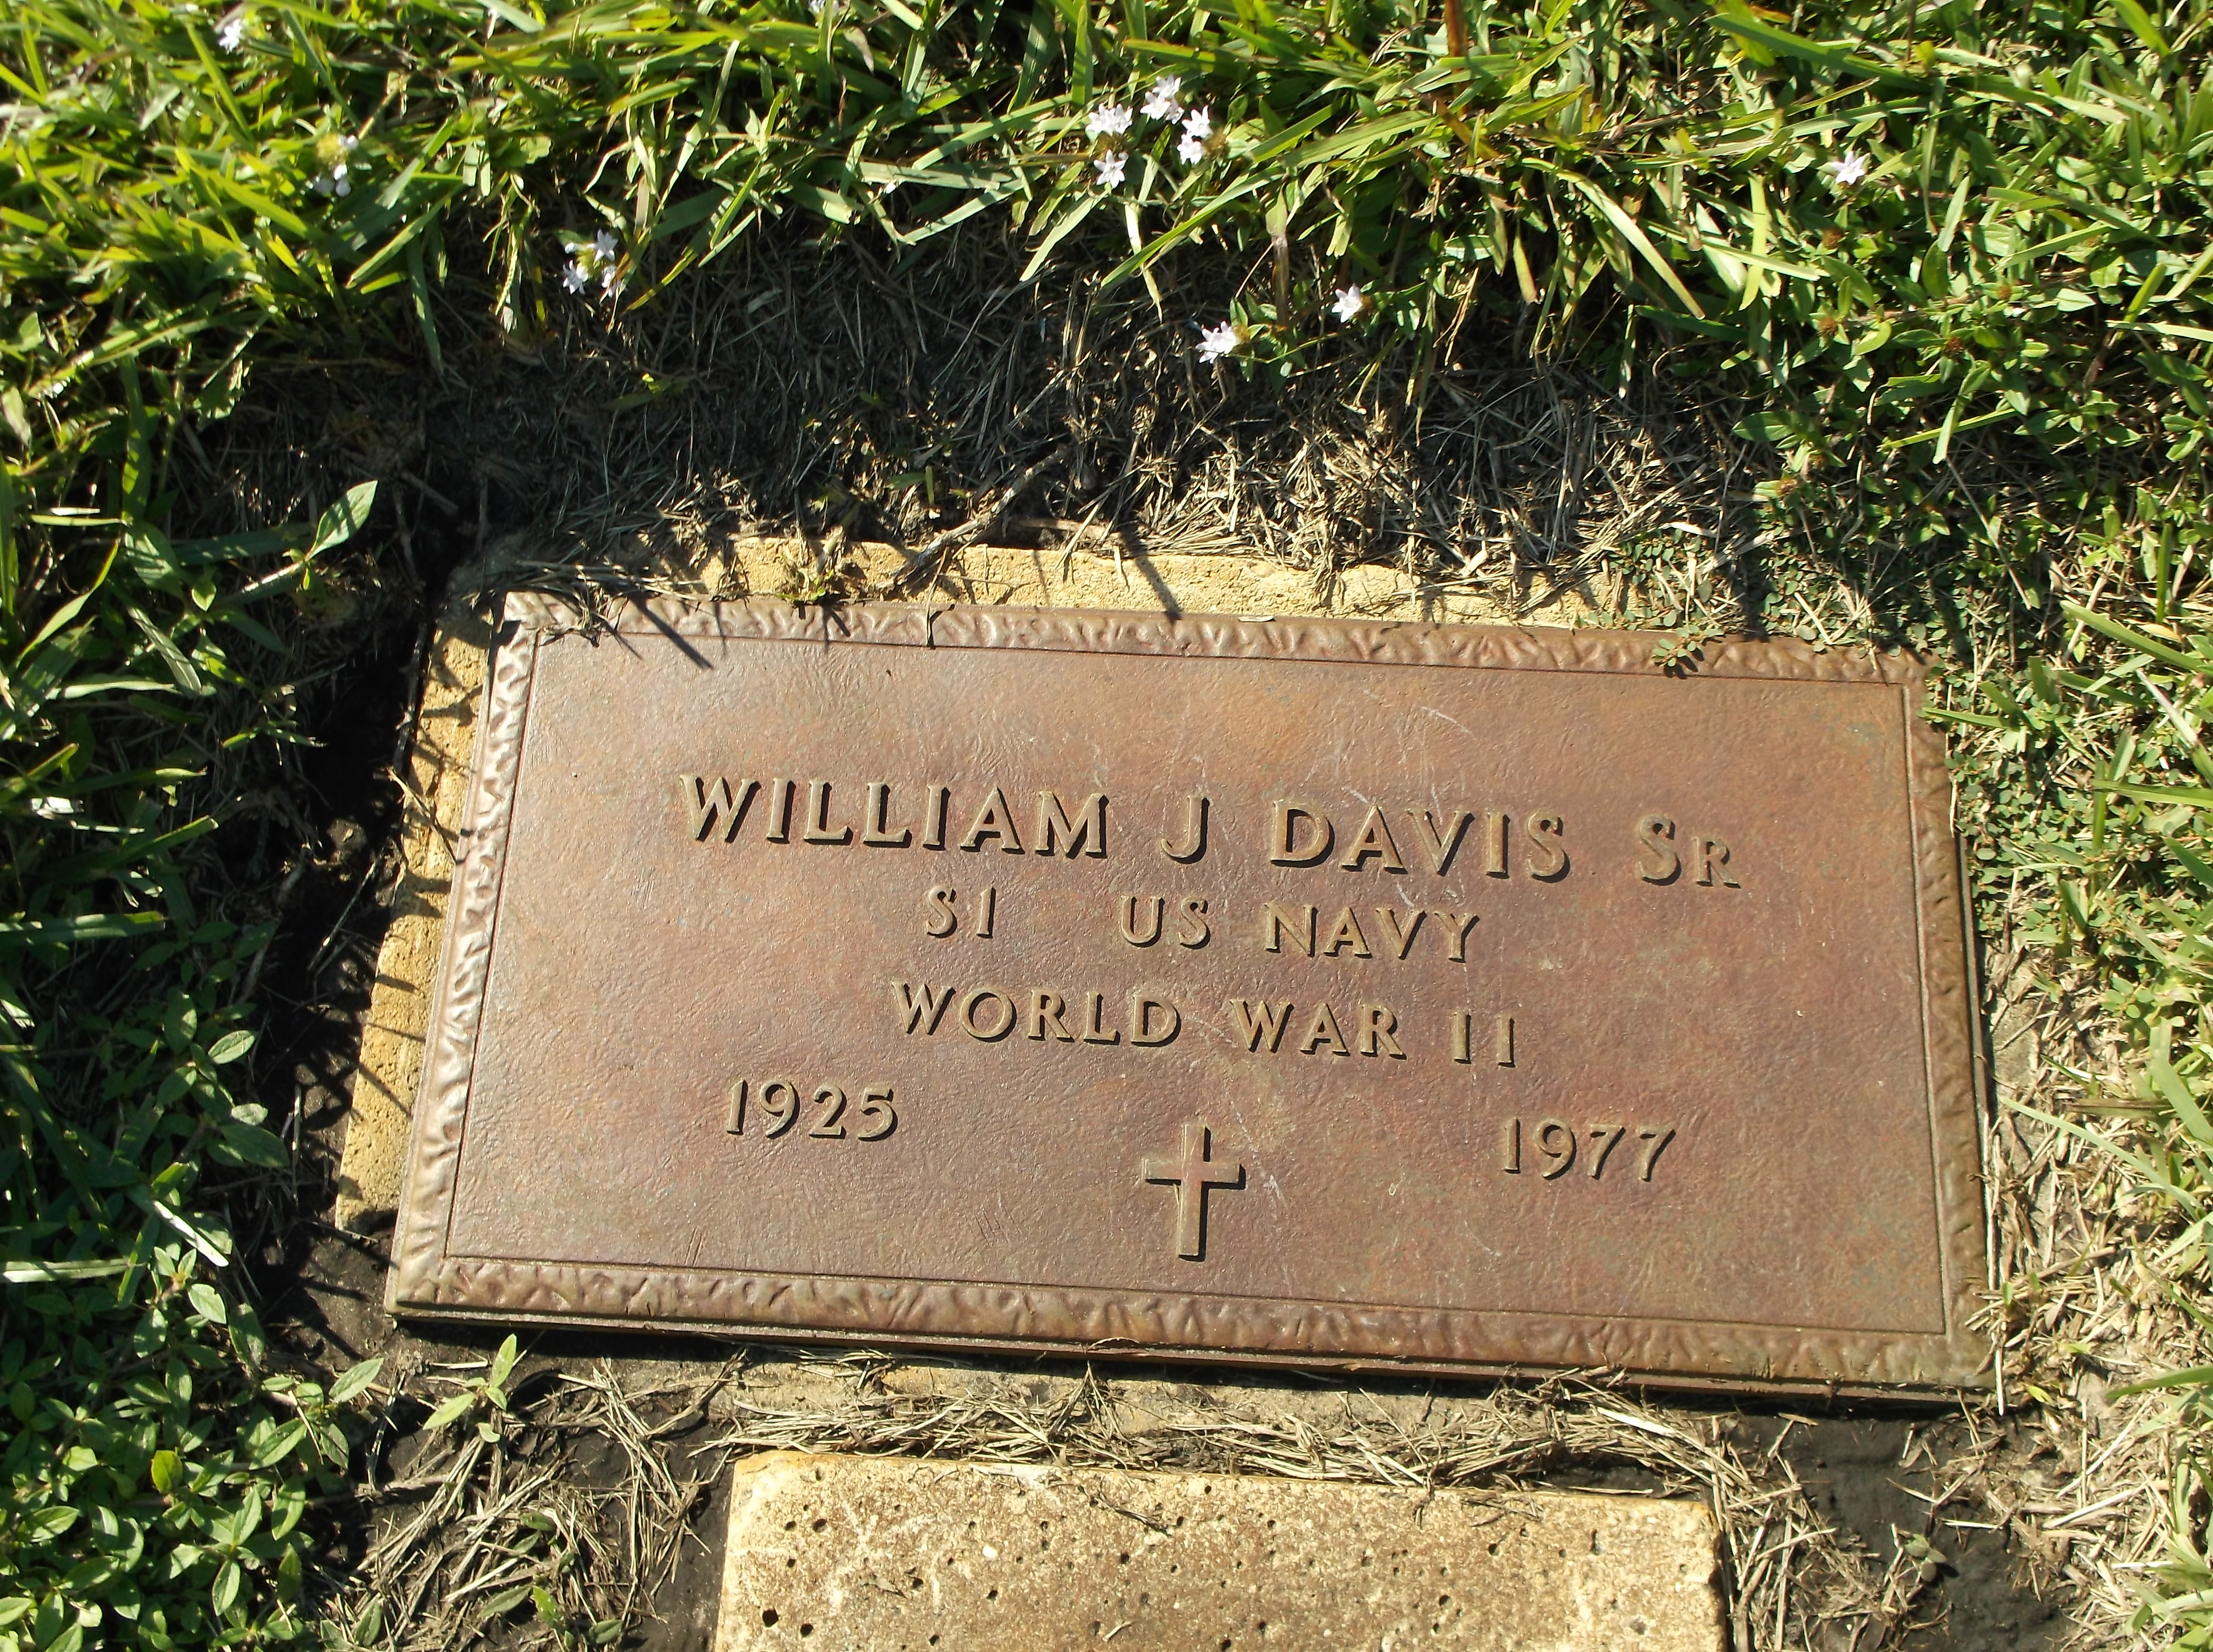 William J Davis, Sr